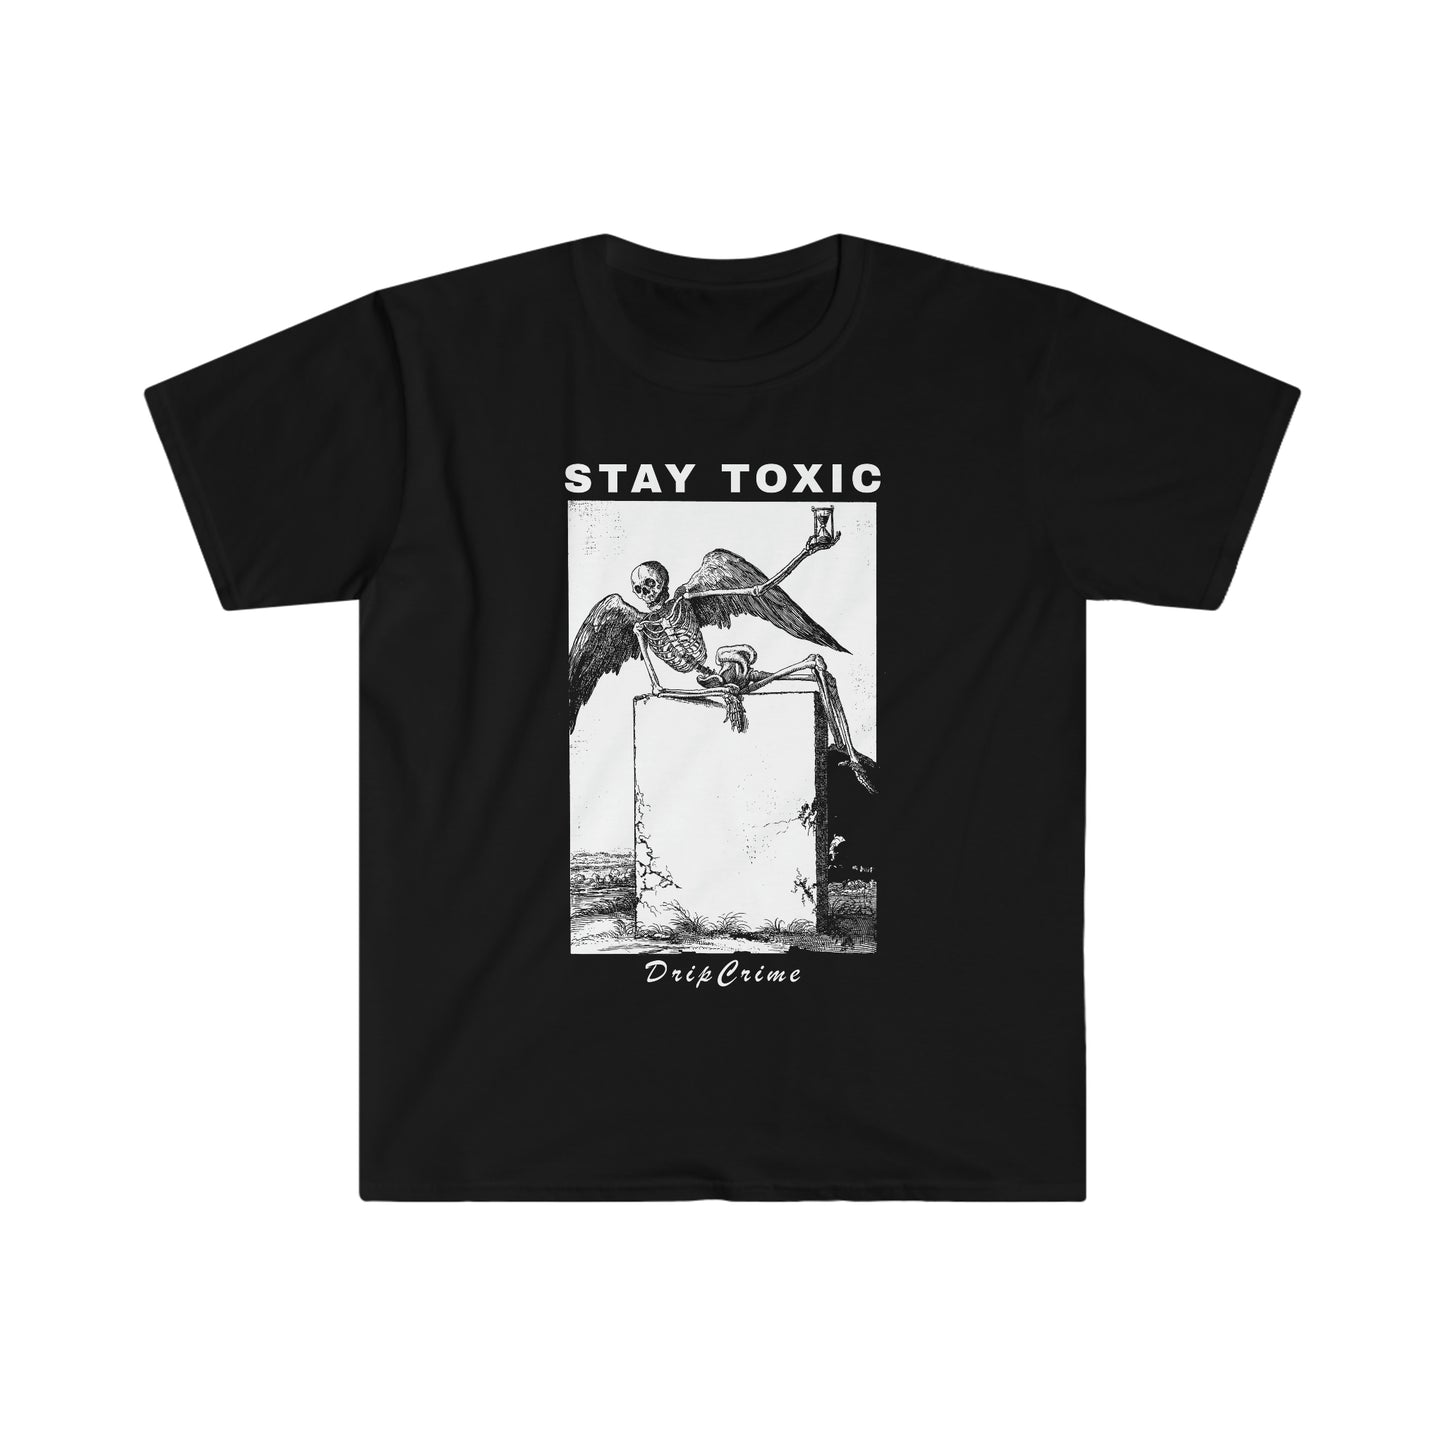 Stay Toxic Goth Y2k Clothing Alt Aesthetic Goth Punk T-Shirt